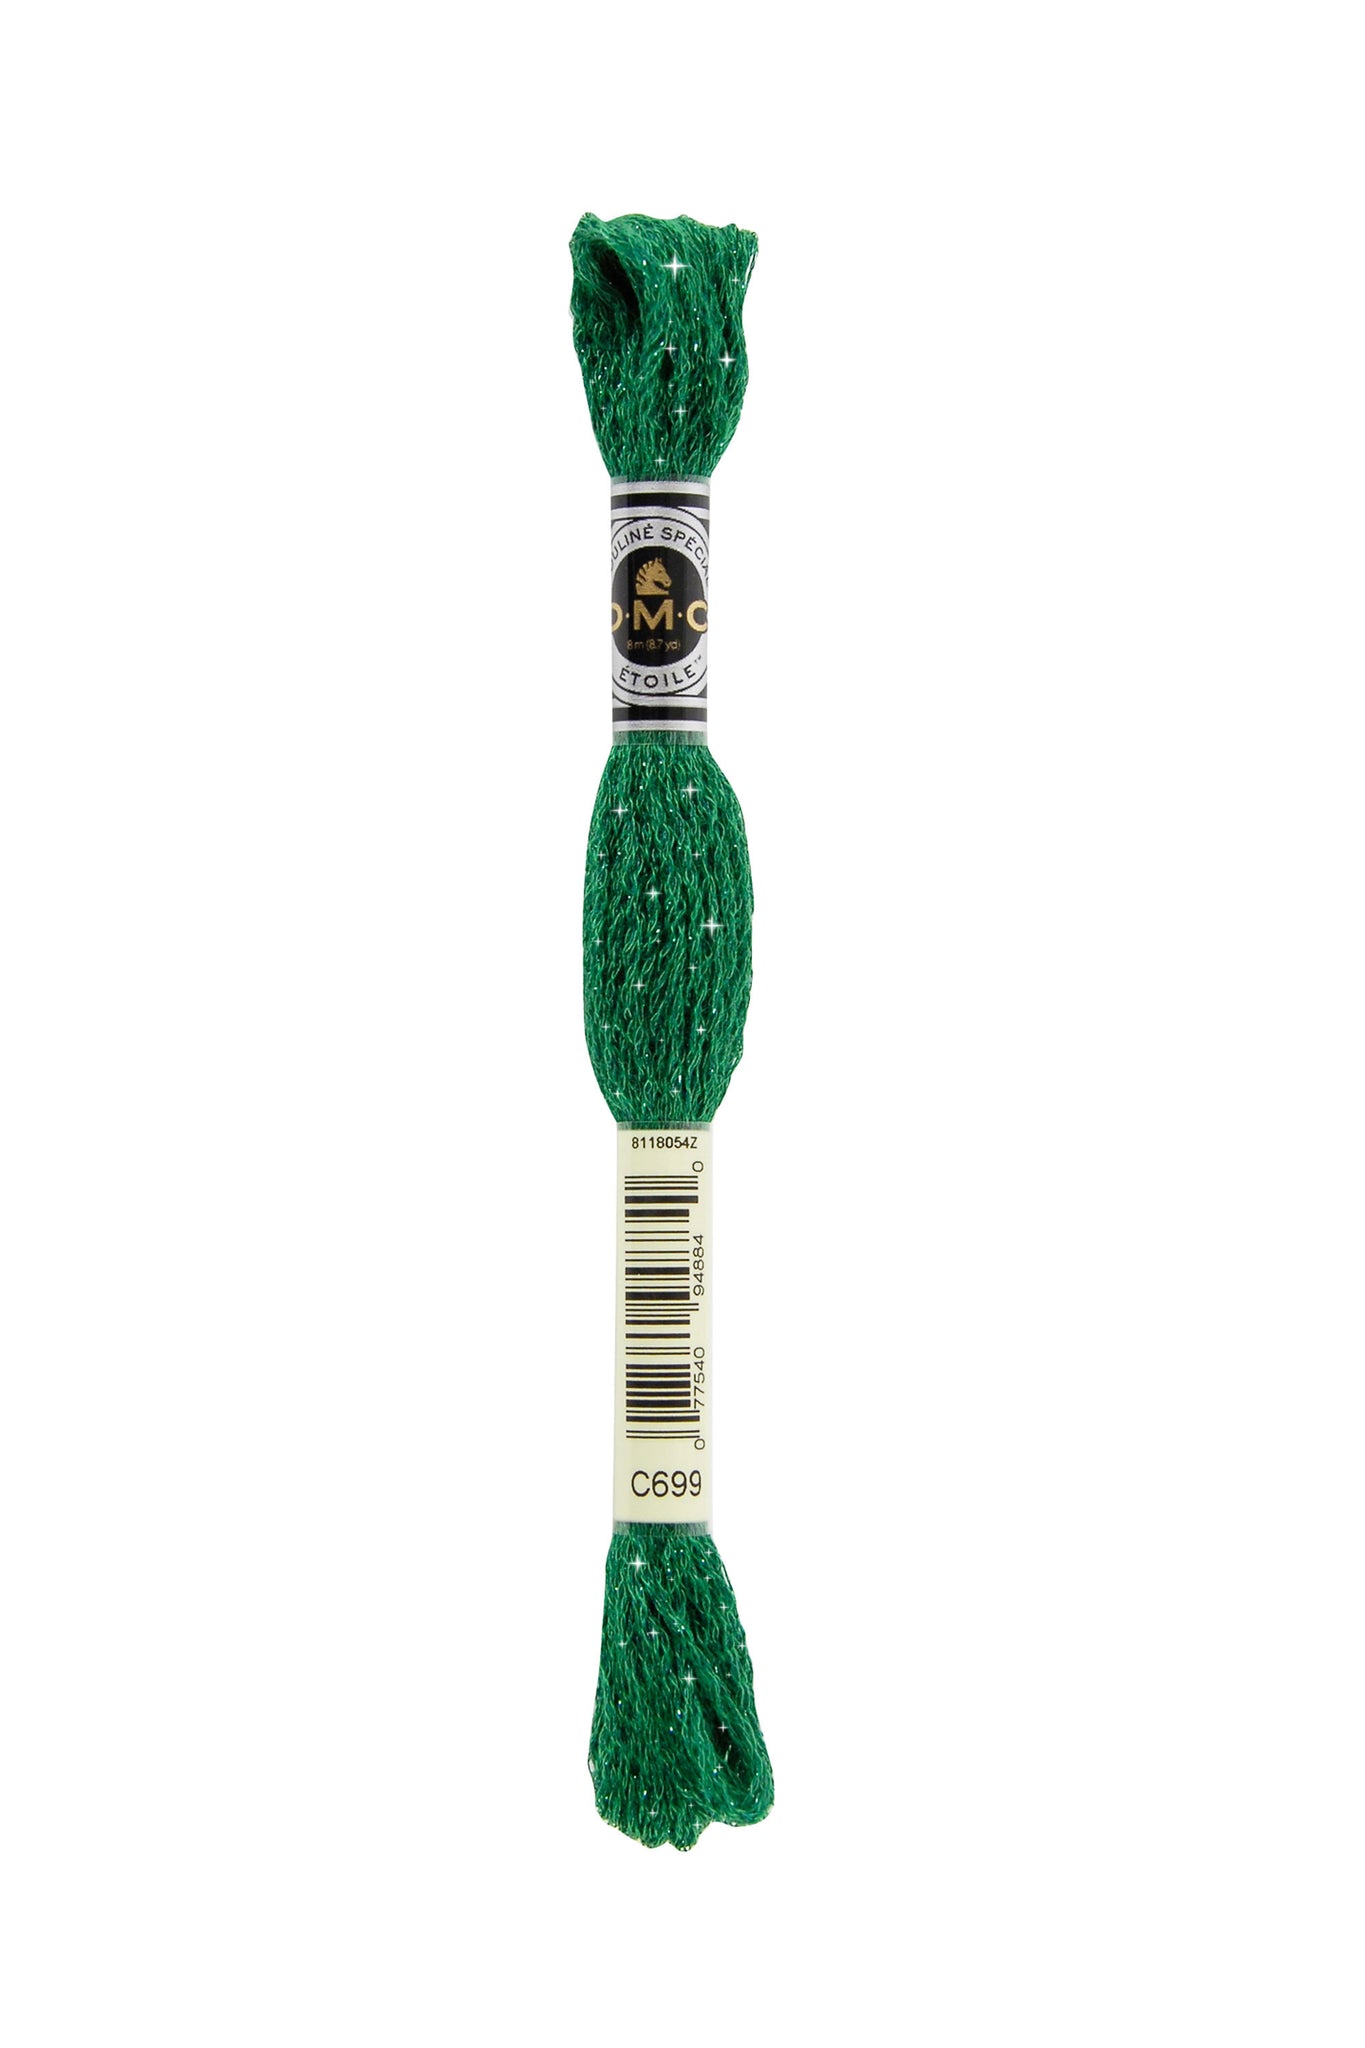 Mouliné Étoile - C699 (Green) - DMC Embroidery Floss